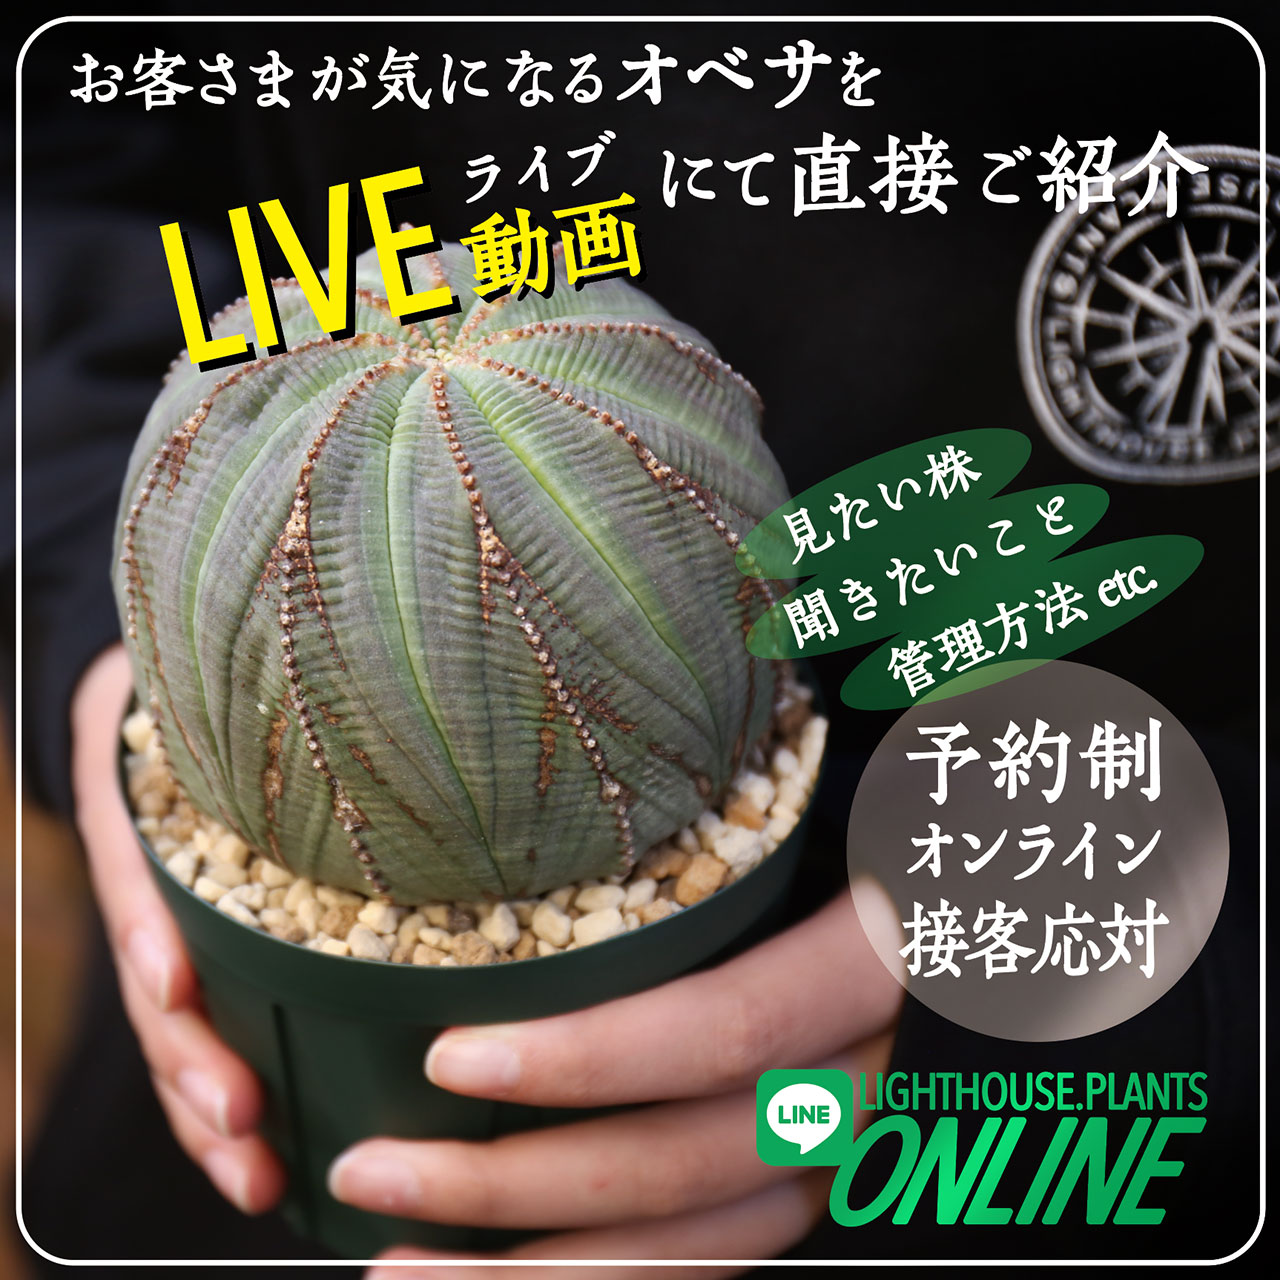 【オンライン接客】LINEコールのビデオ通話を利用したLIGHTHOUSE.PLANT ONLINE